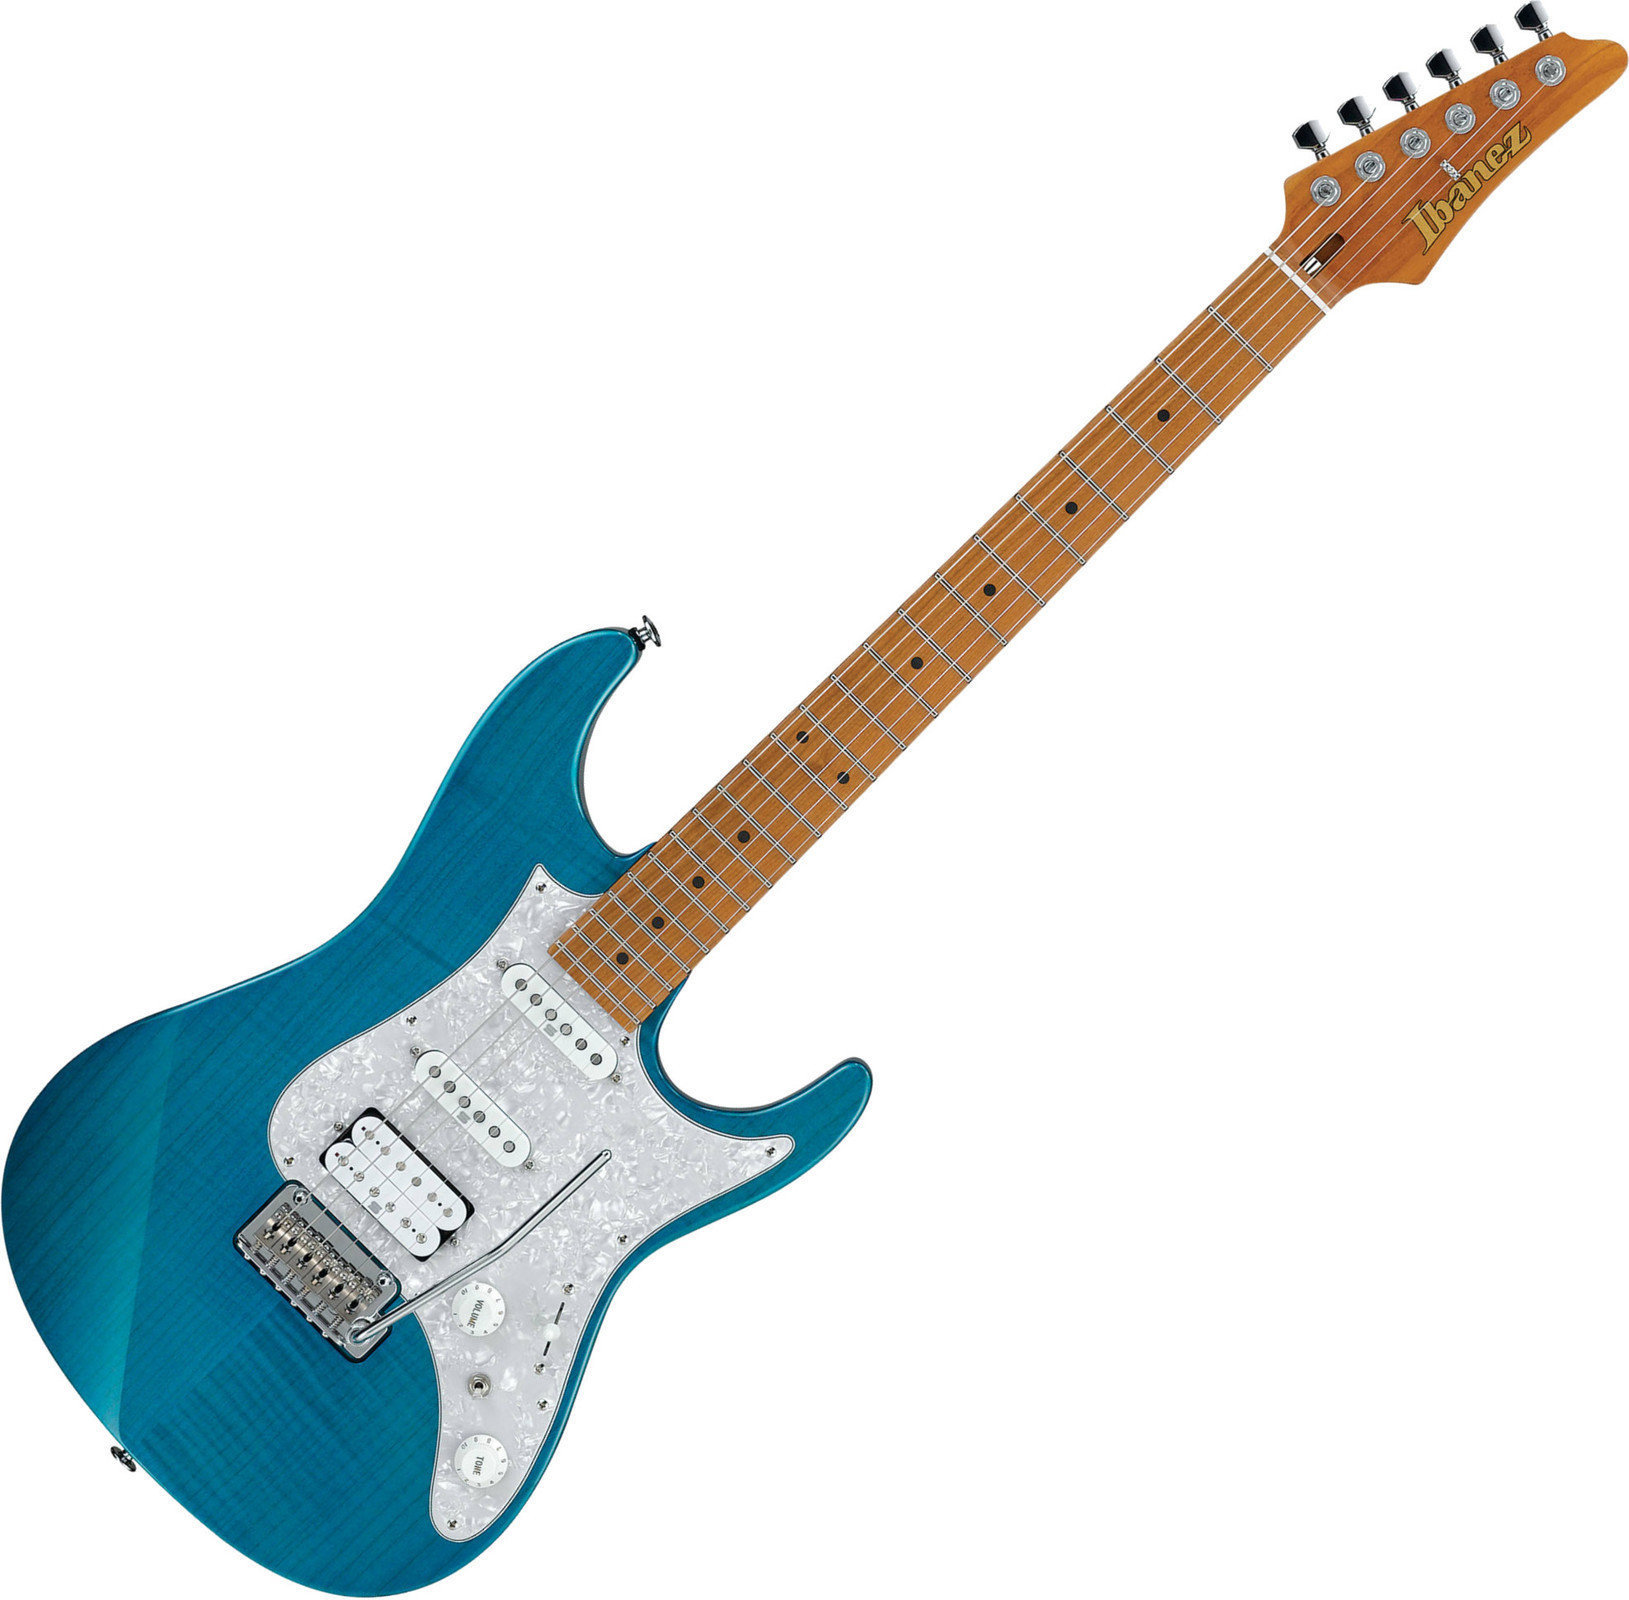 Electric guitar Ibanez AZ2204F-TAB Transparent Aqua Blue